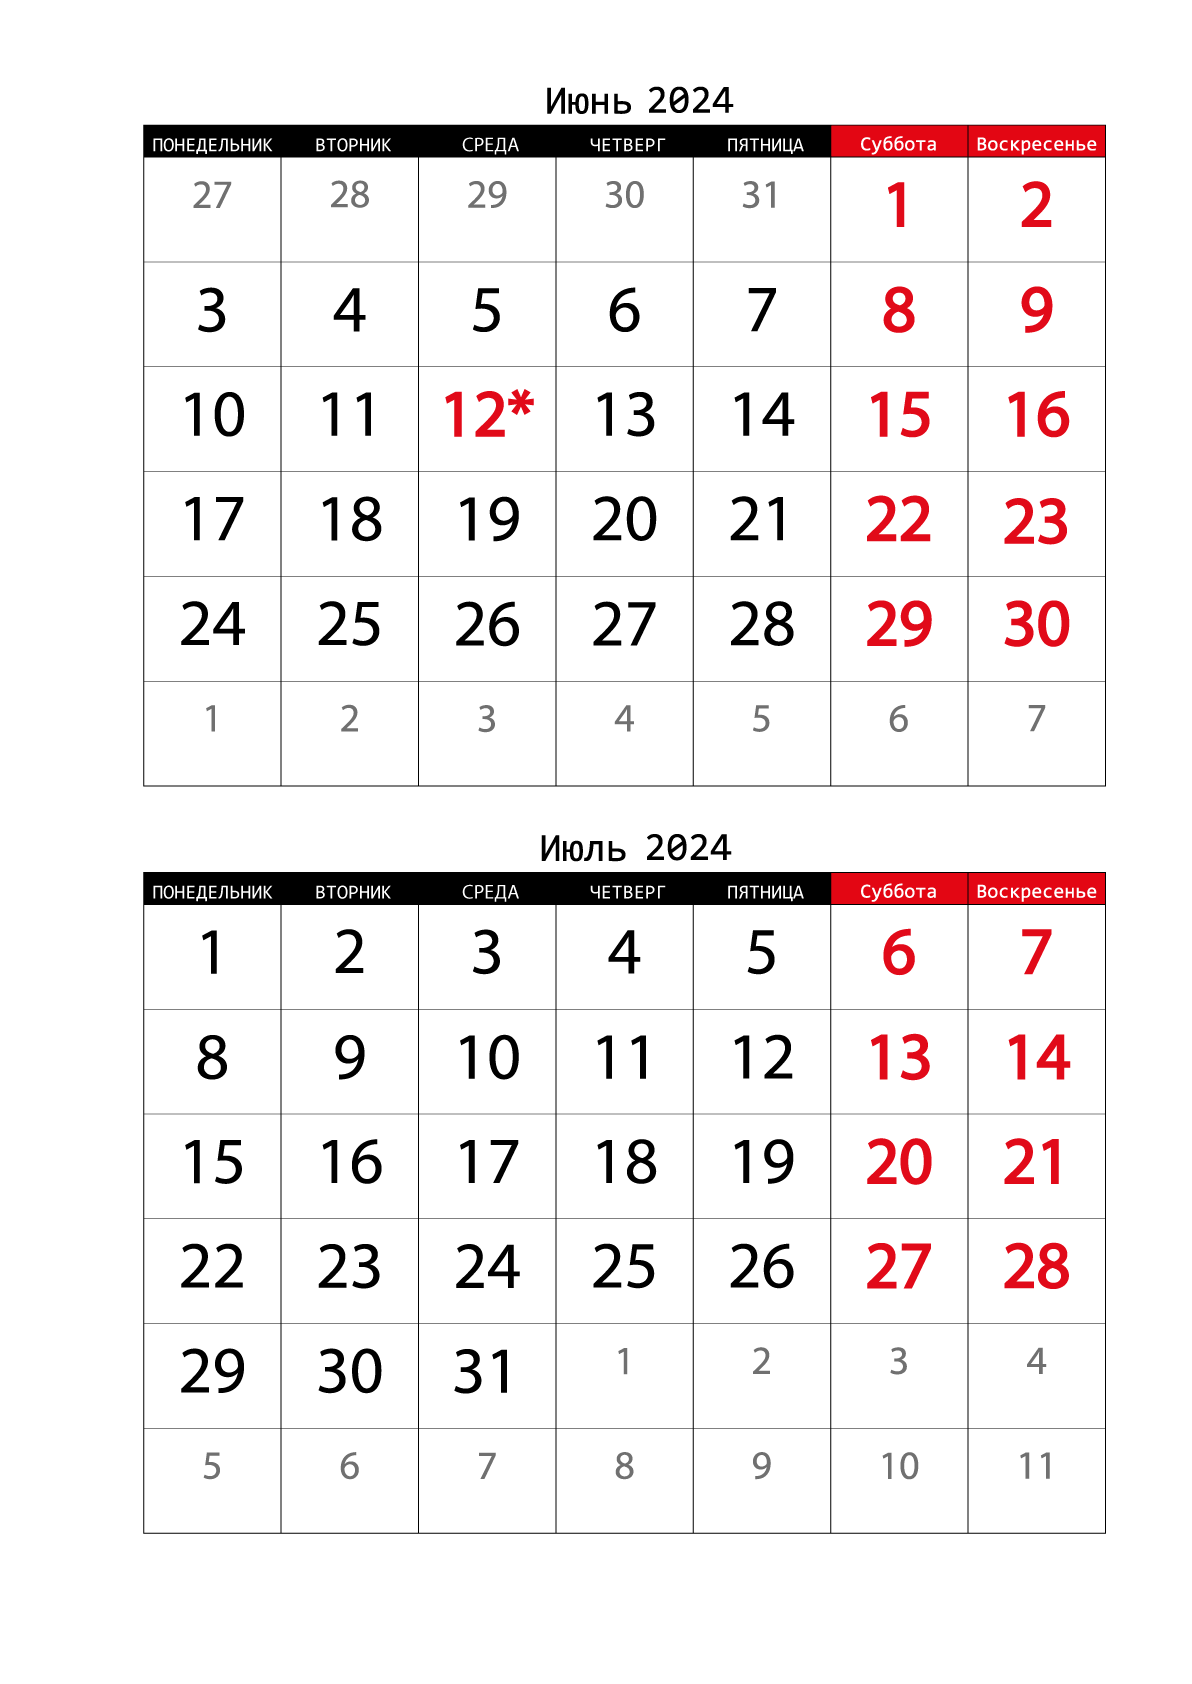 Июнь - Июль 2024 календарь на 2 месяца